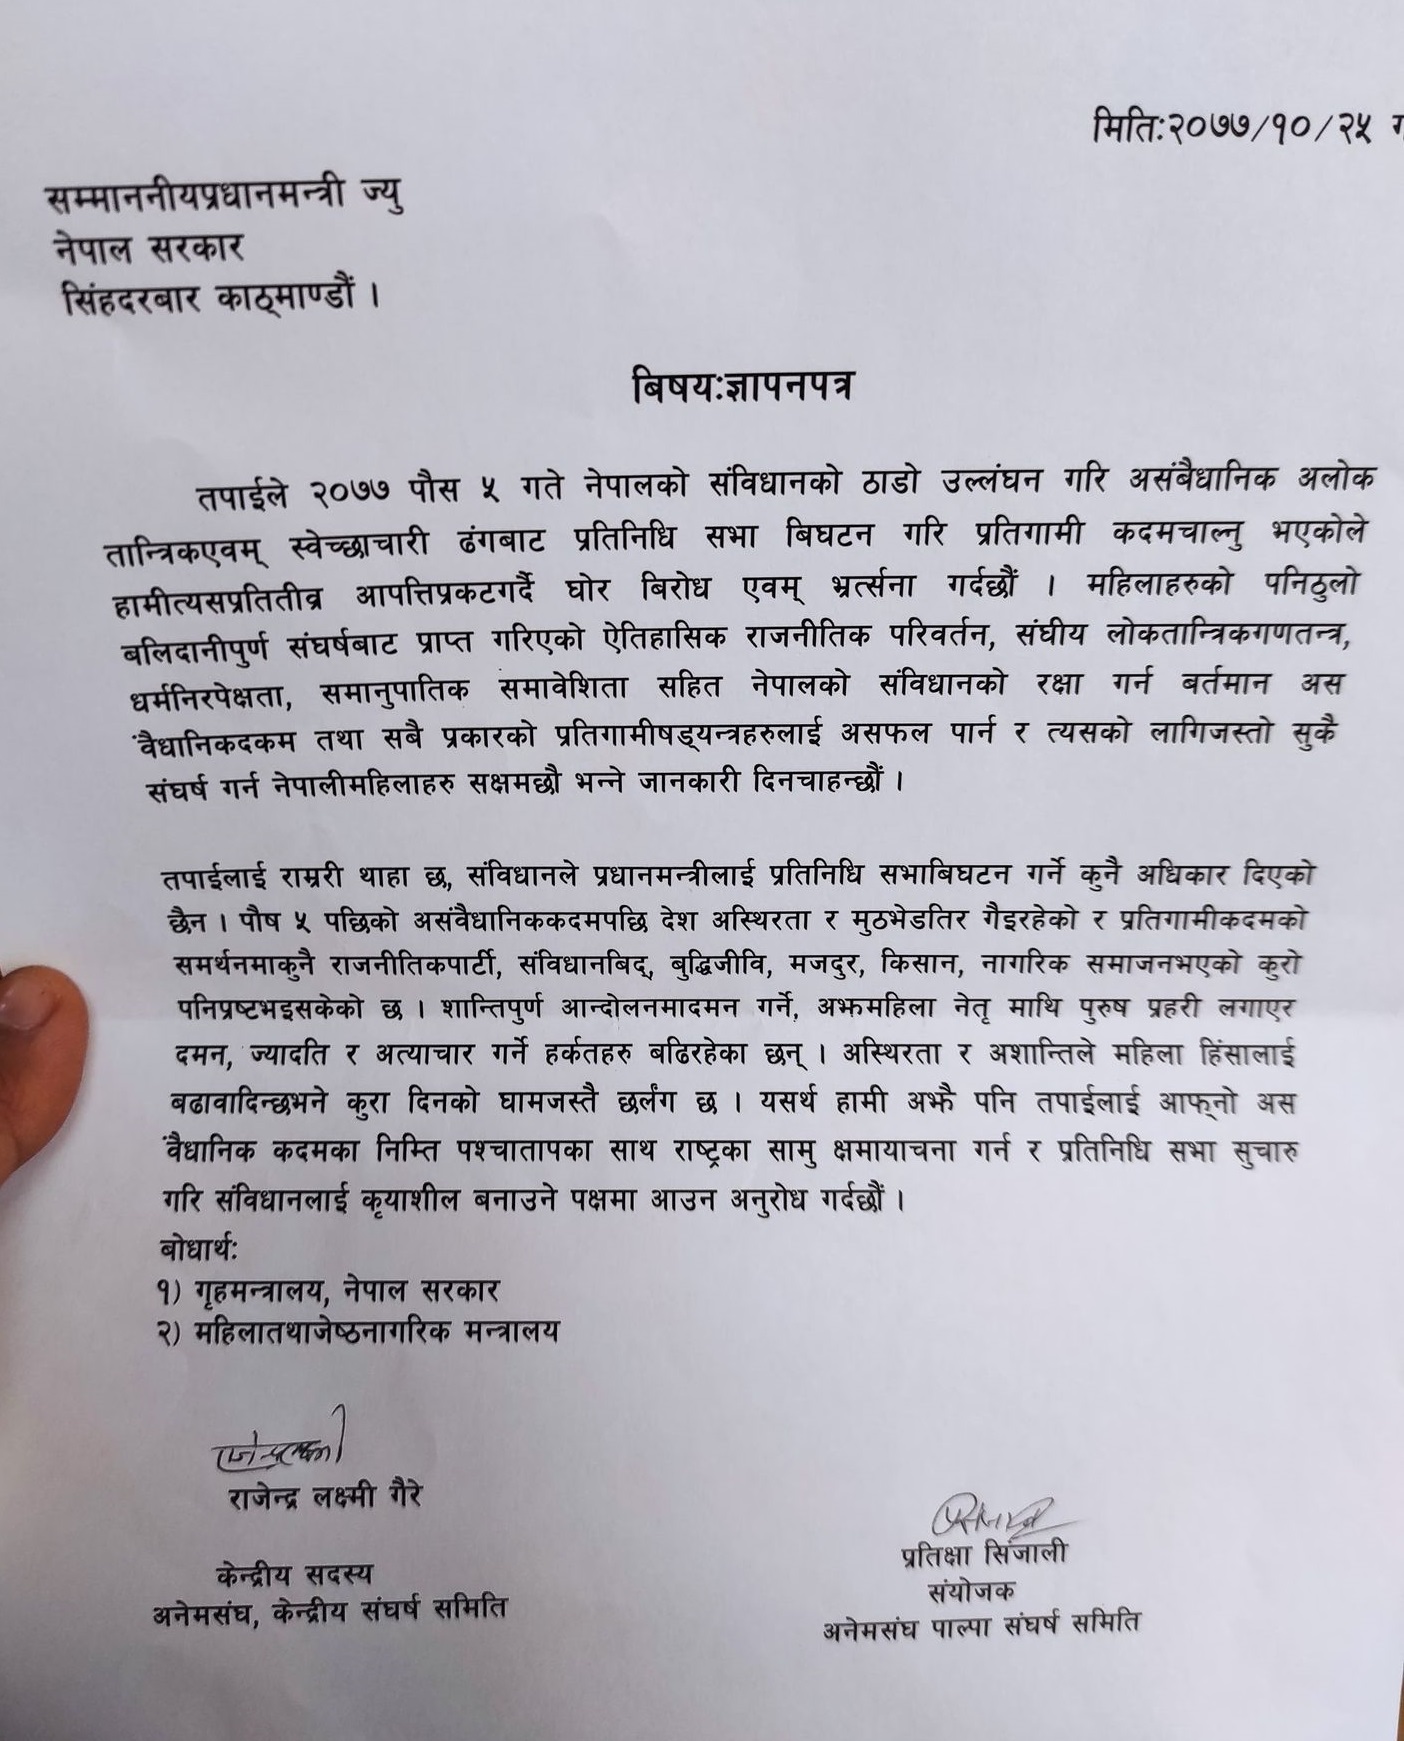 अखिल नेपाल महिला संघकाे प्रतिनिधि सभा विघटनको विरुद्धमा ज्ञापन पत्र